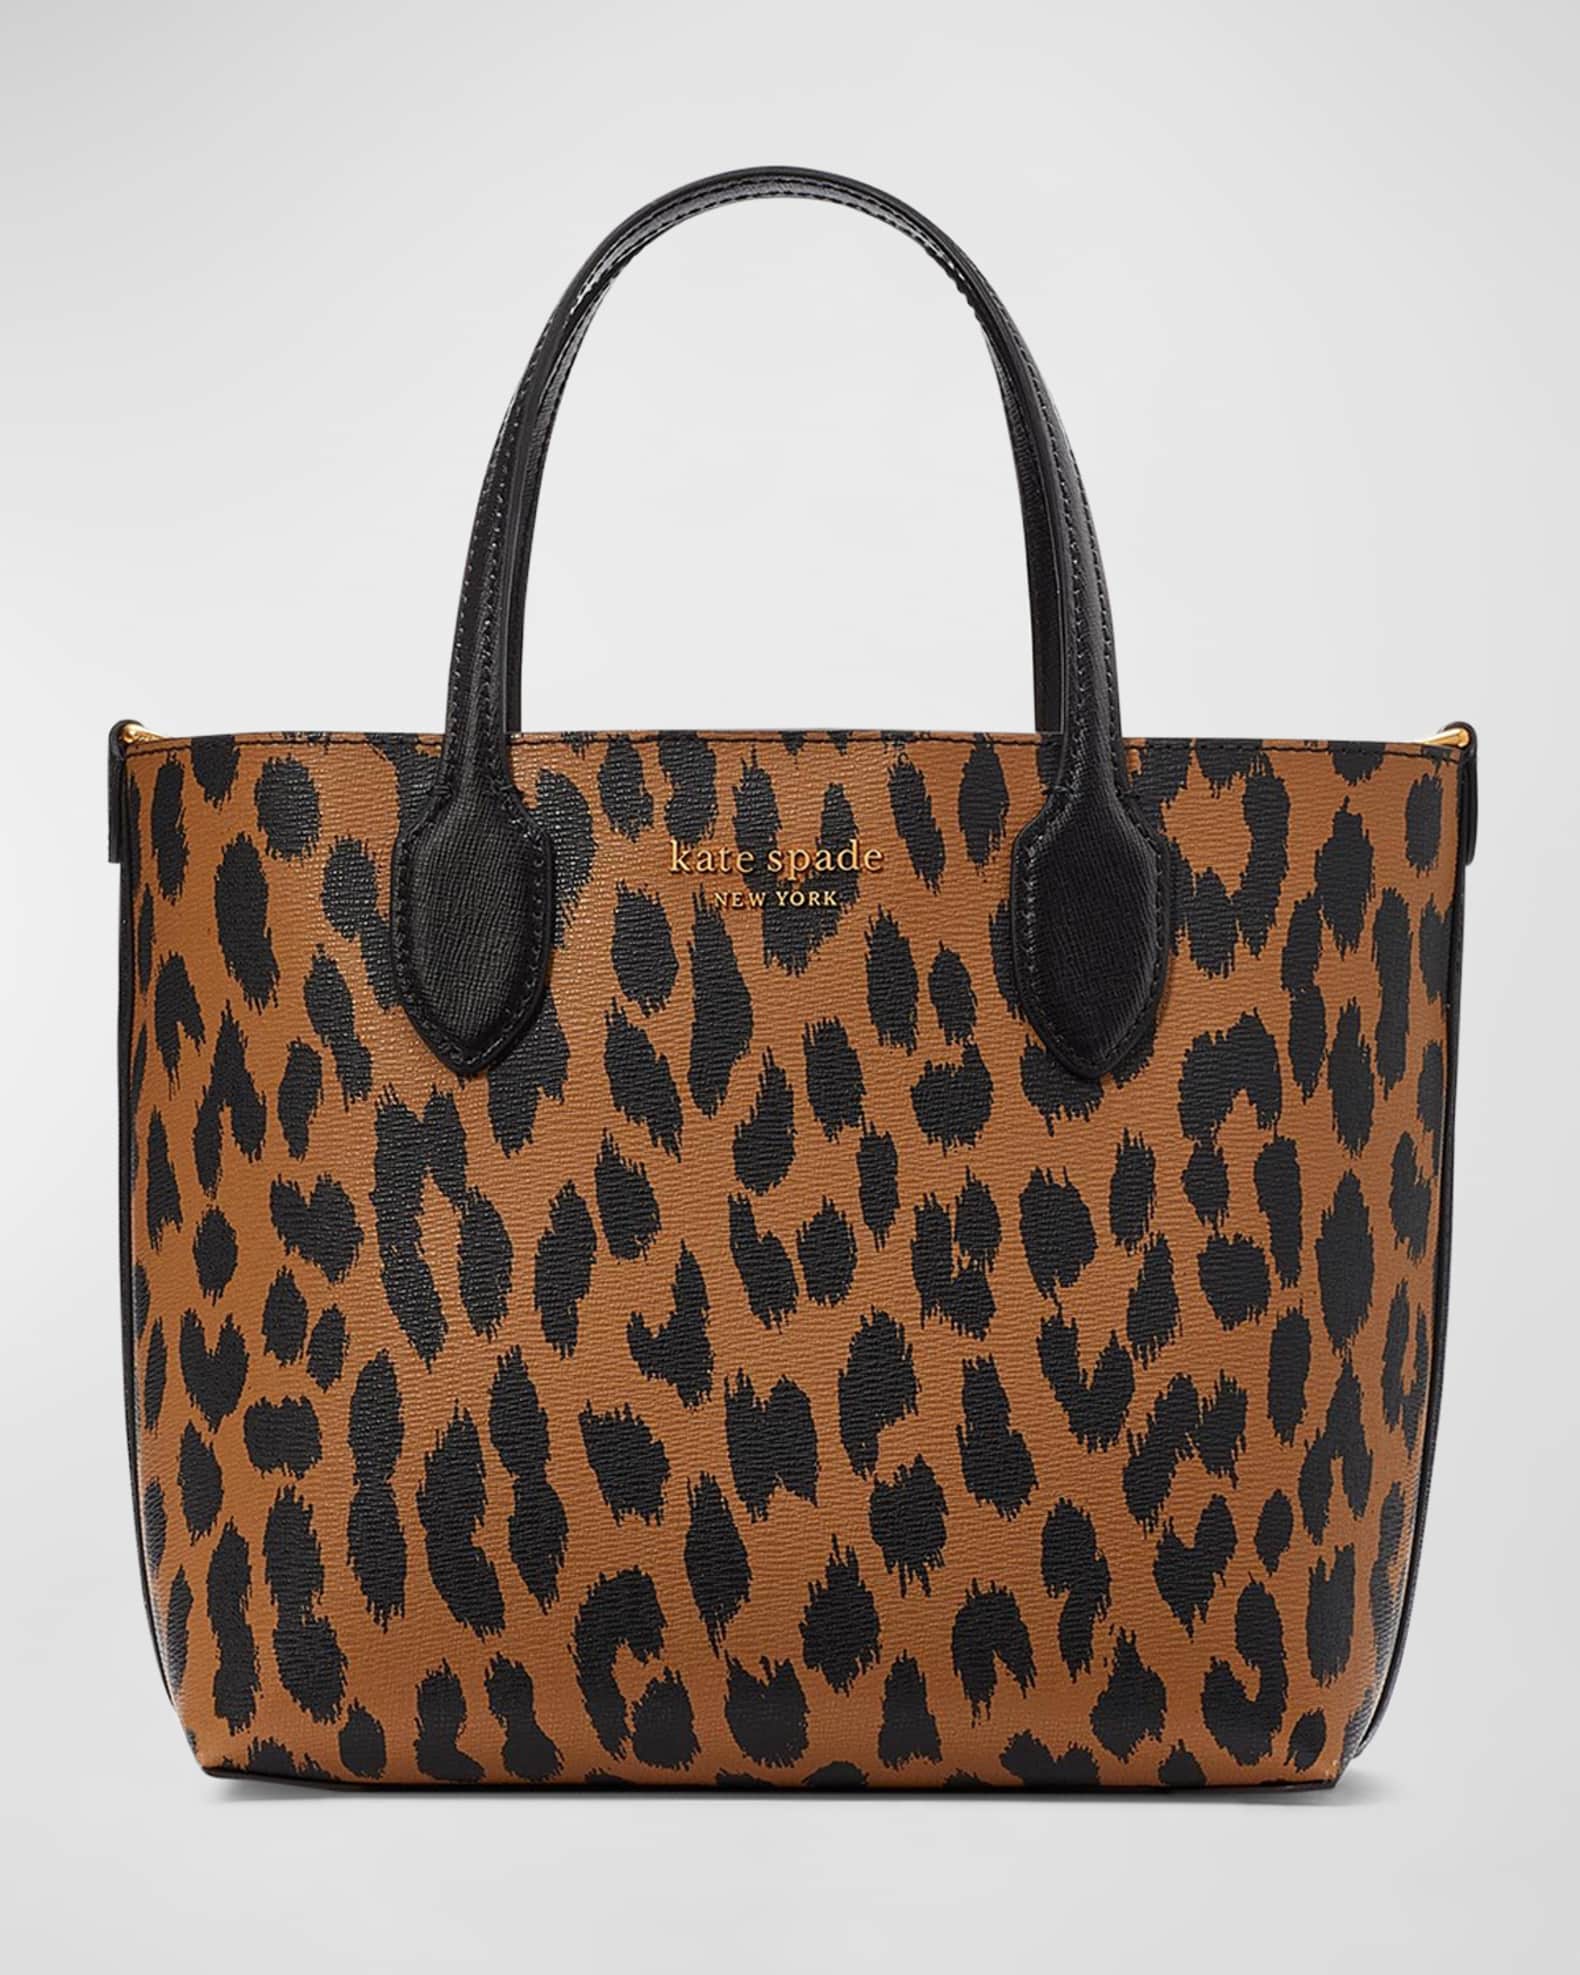 Kate Spade Leopard Print Backpack in Brown